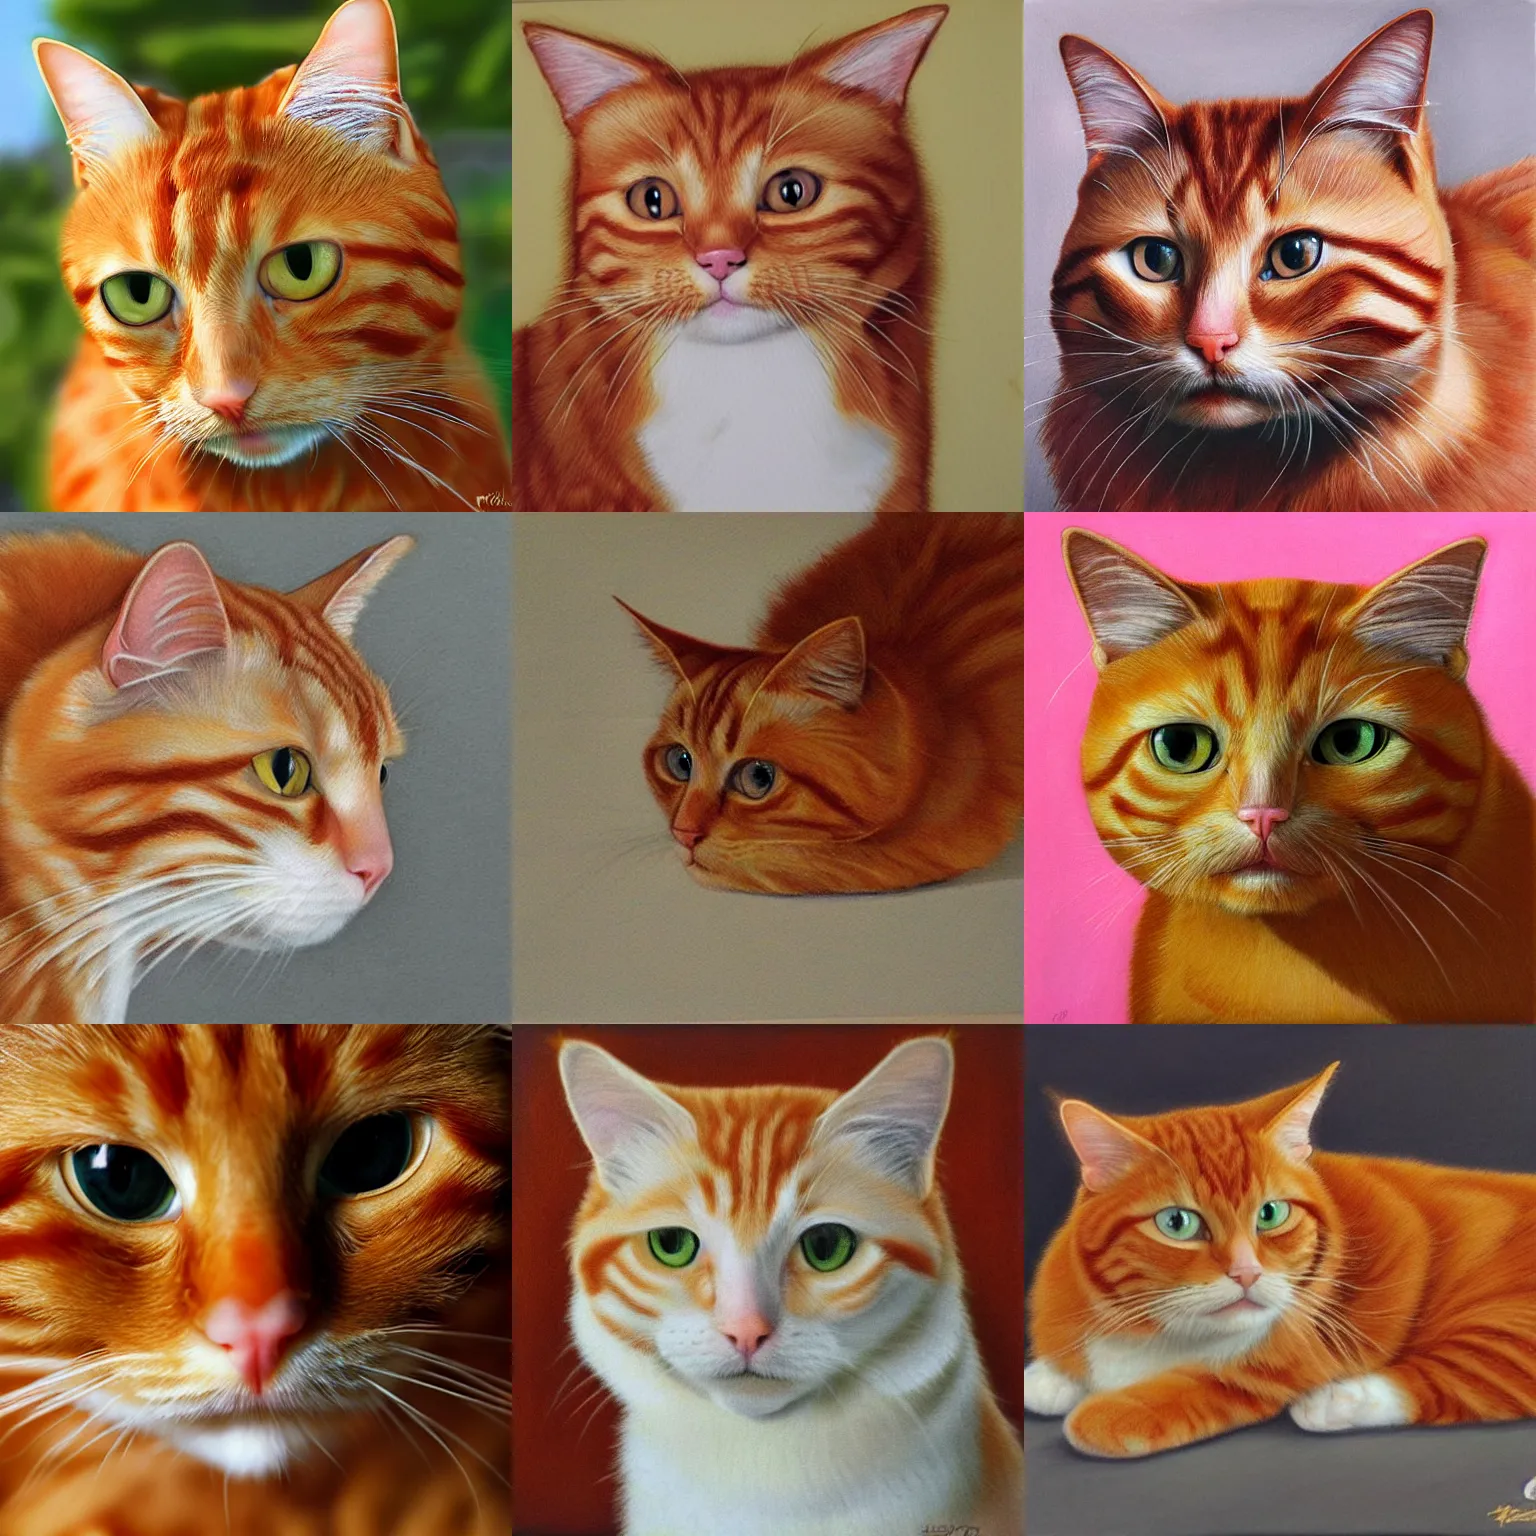 Prompt: ginger cat, hyperrealism